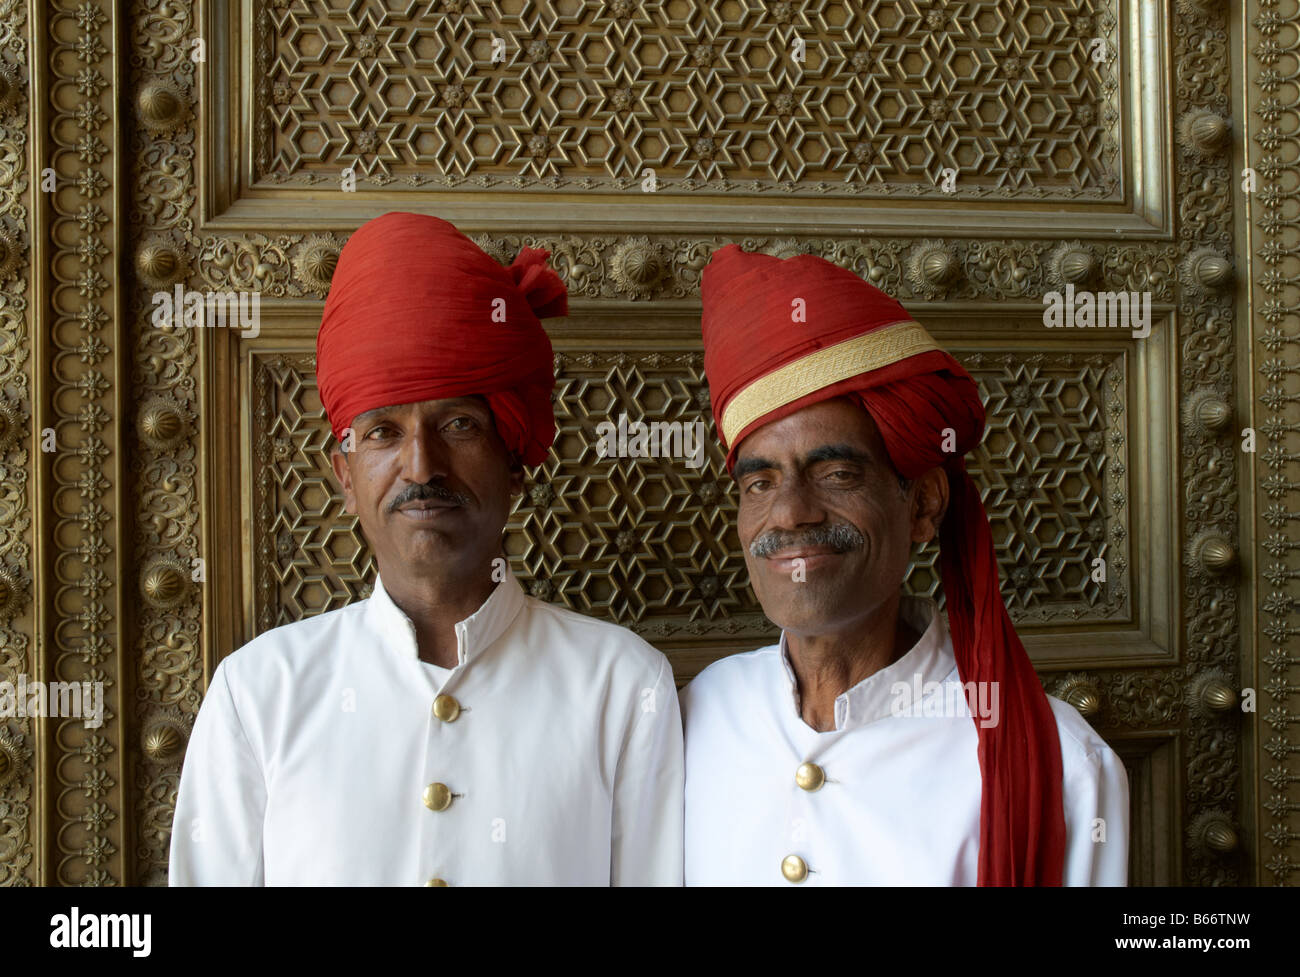 Zwei Wachen tragen rote Turbane und weiße Tuniken im City Palace in der  indischen Stadt Jaipur posieren für die Kamera Stockfotografie - Alamy